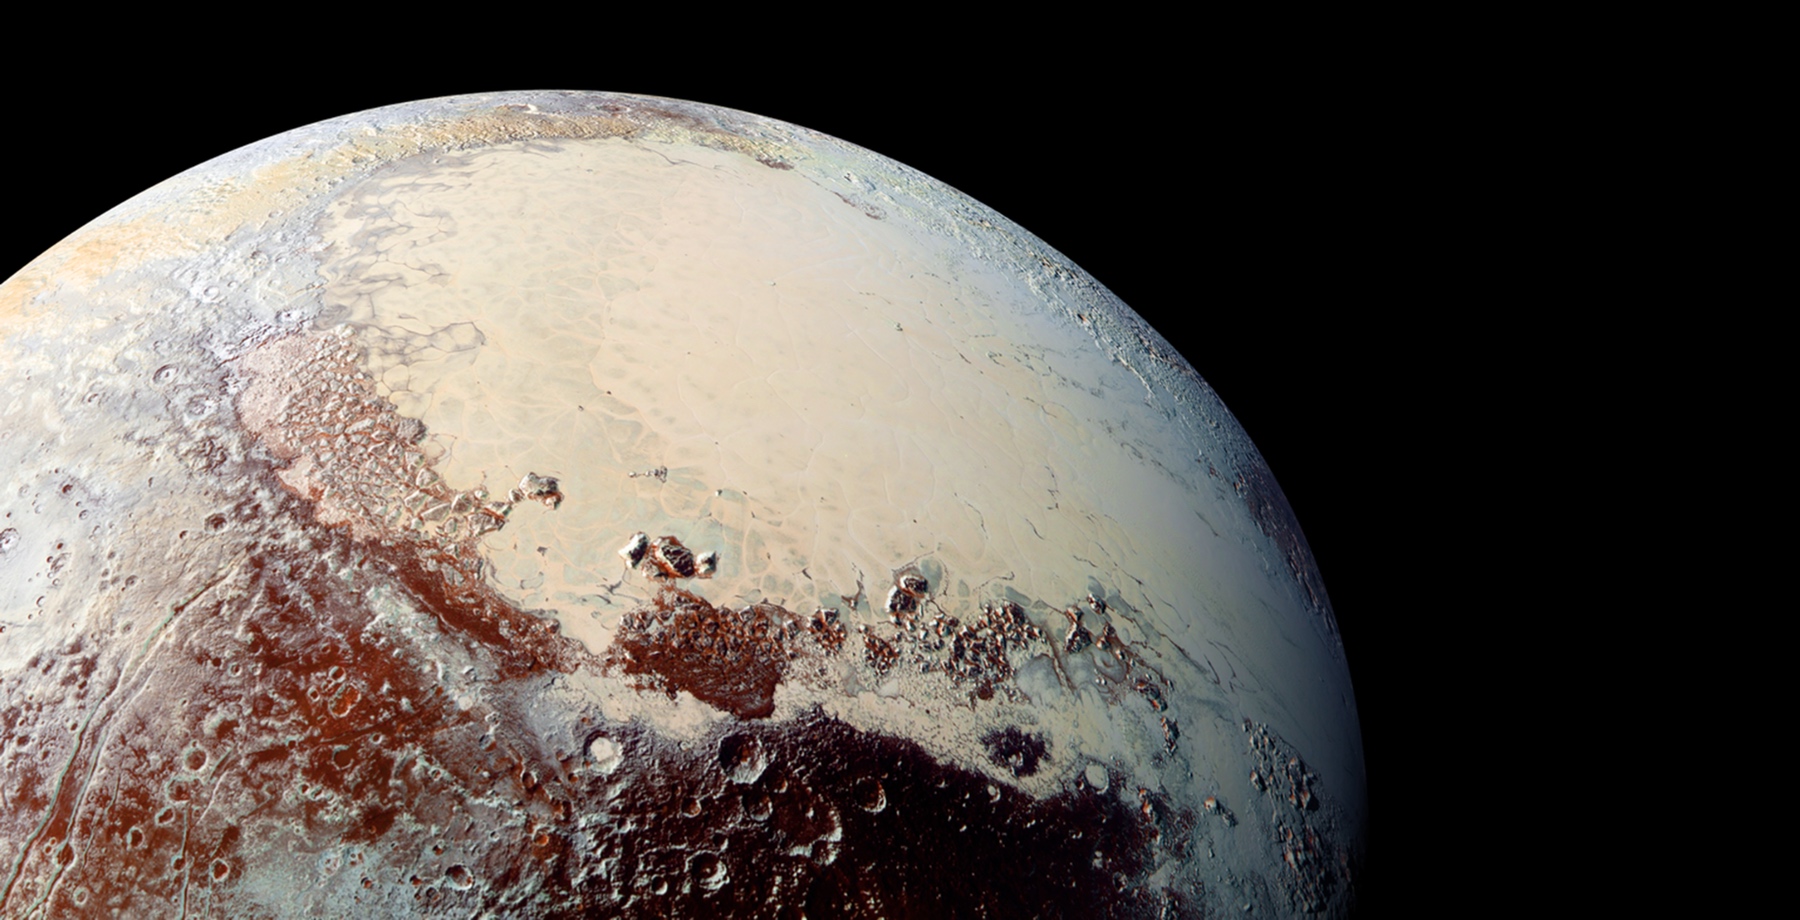 En juillet 2015, l’humanité découvrait le vrai visage de Pluton grâce à la sonde New Horizons. © Nasa, JHUAPL, SwRI